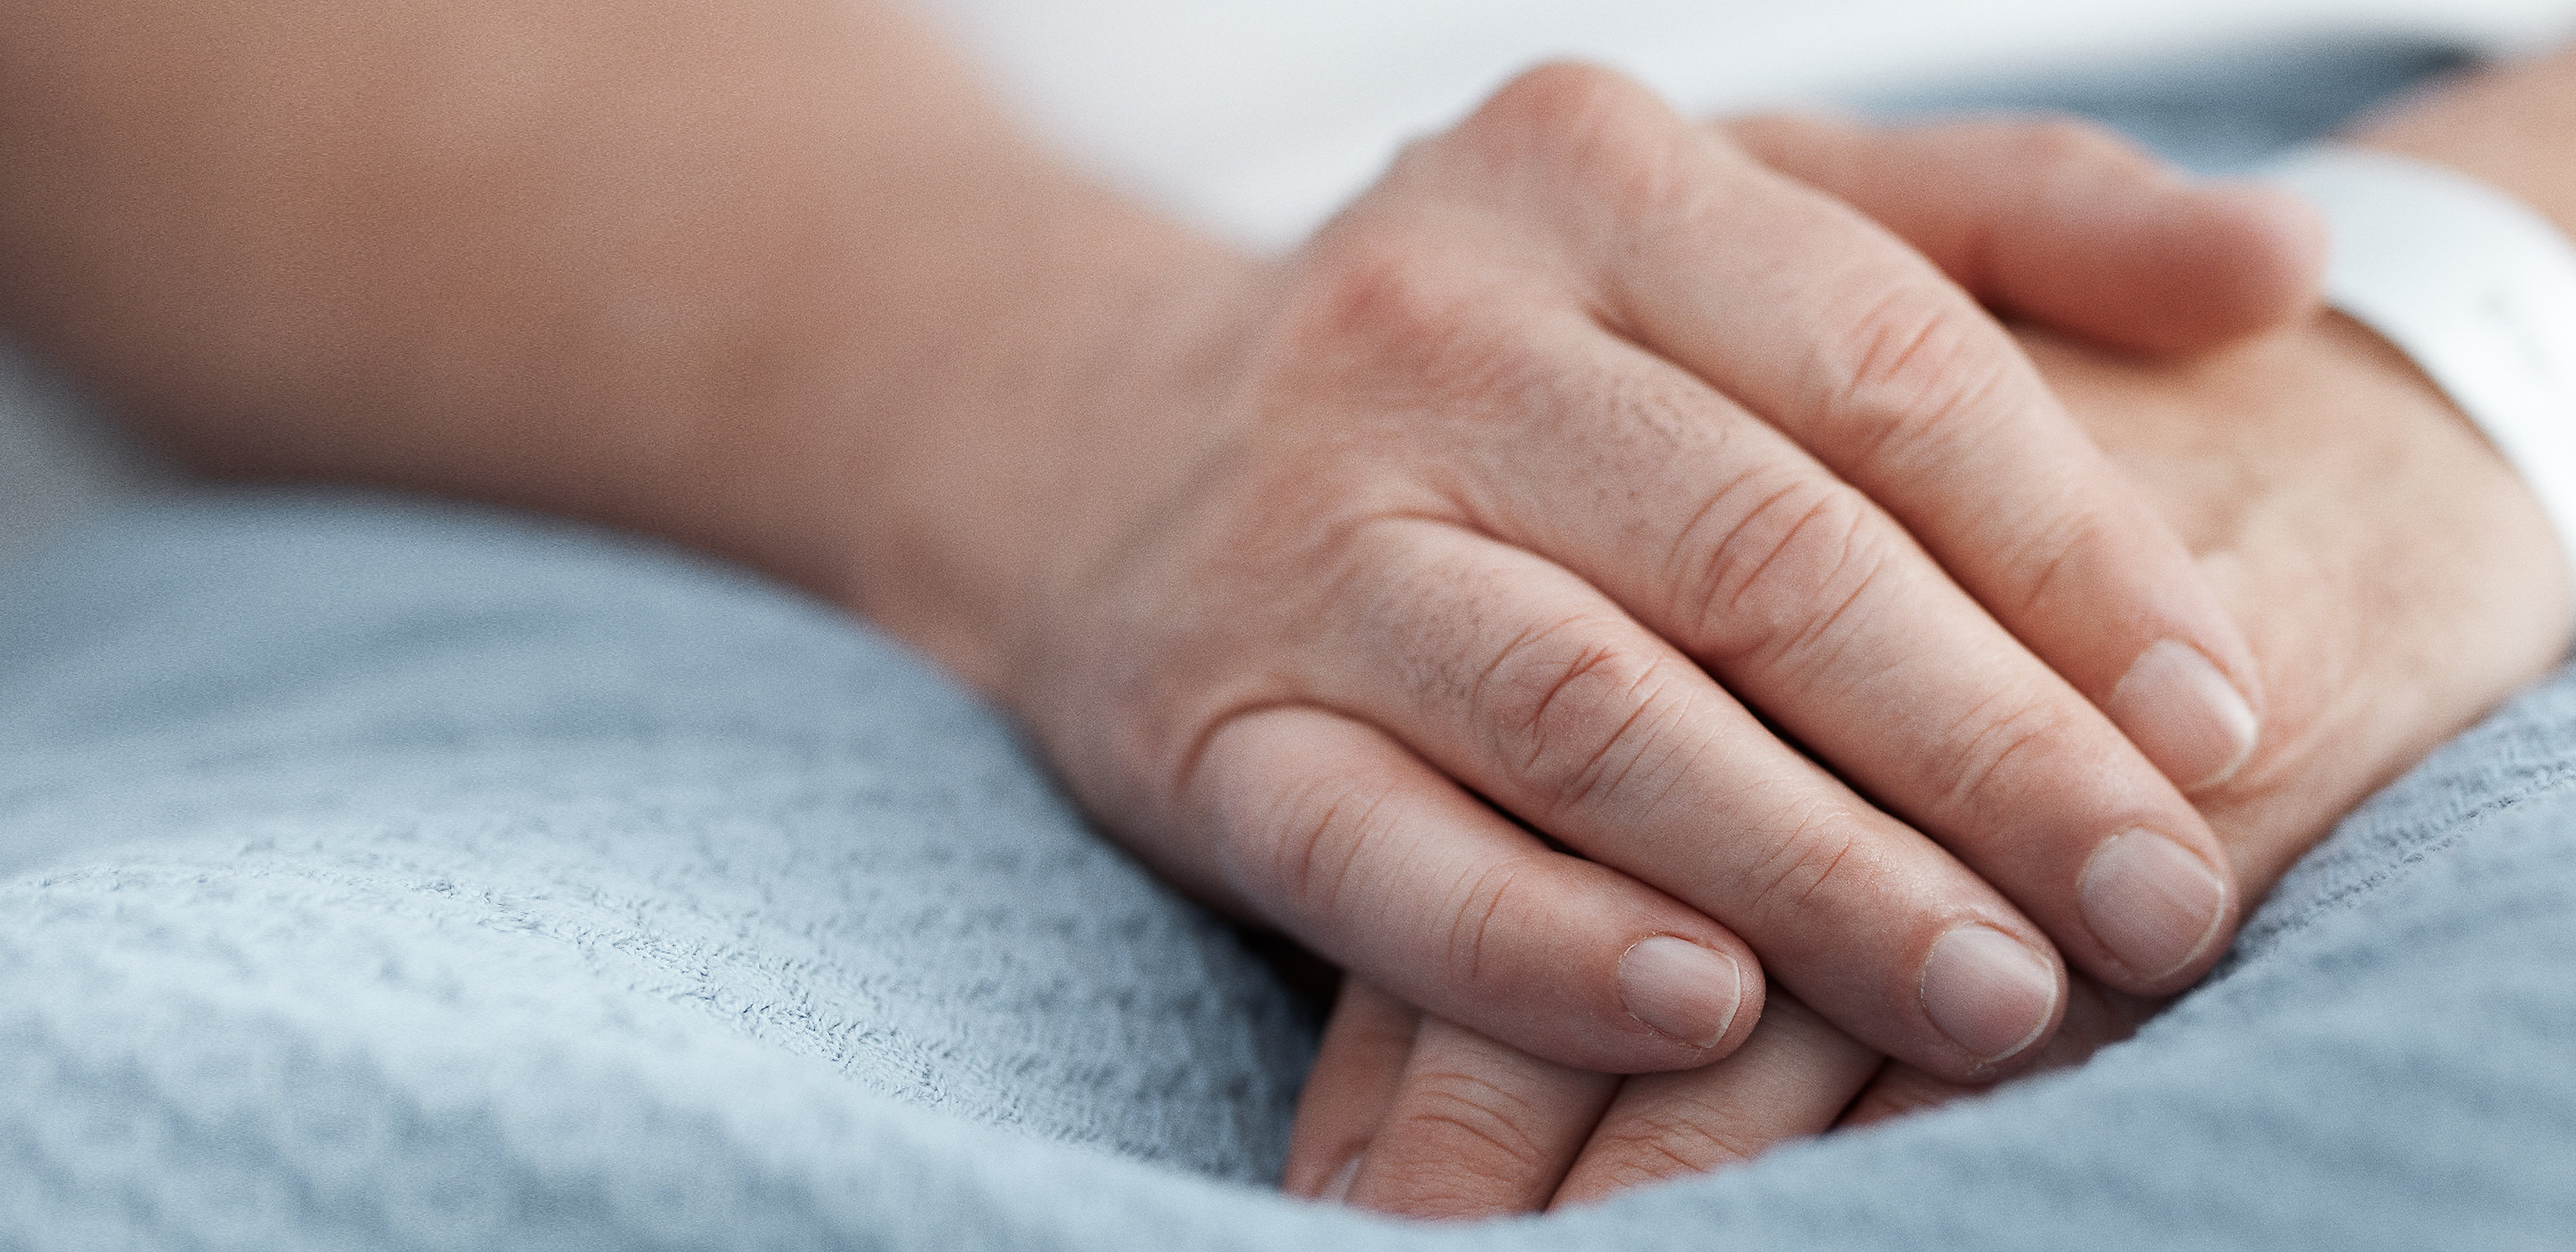 En patients händer vilar fridfullt på en filt i en sjukhussäng